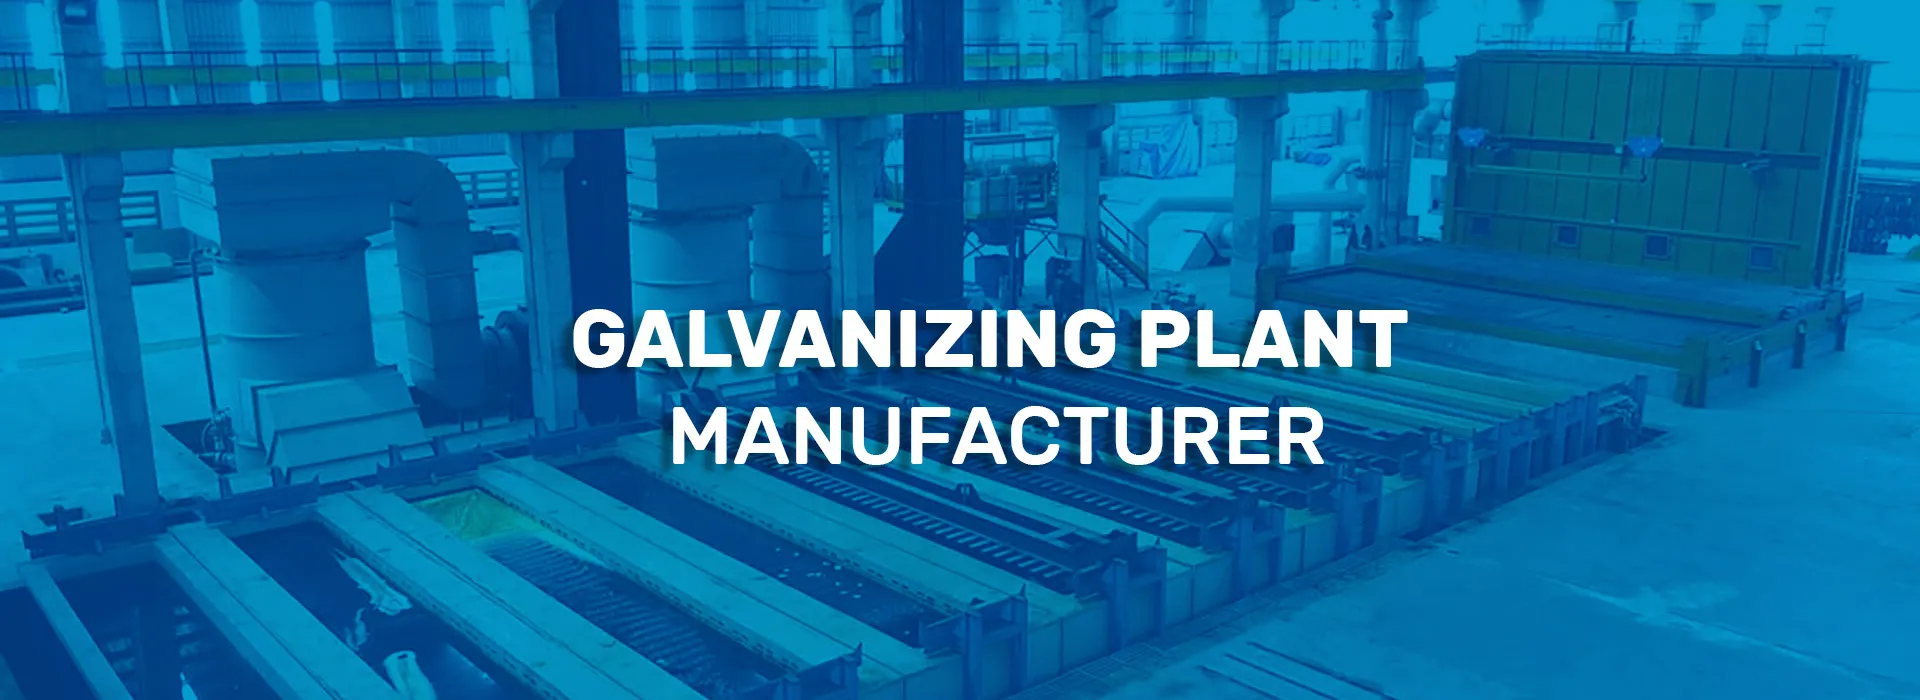 galvanizing plant manufacturers in india